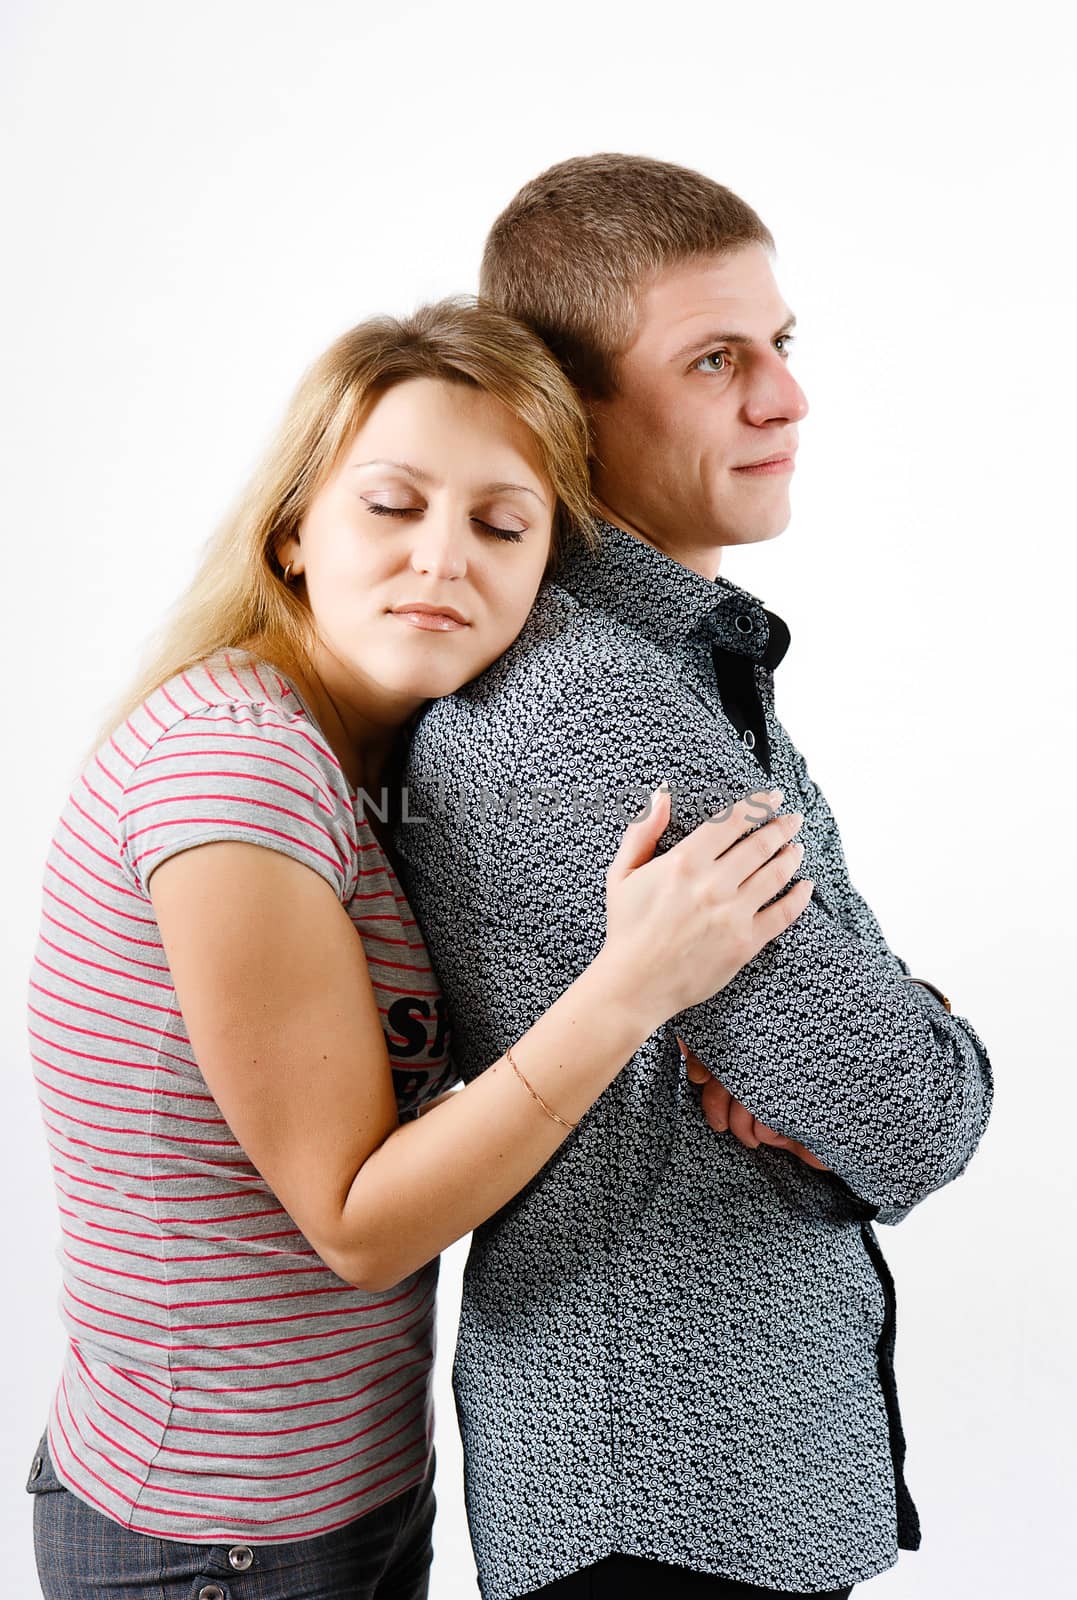 young woman hugging man by pzRomashka